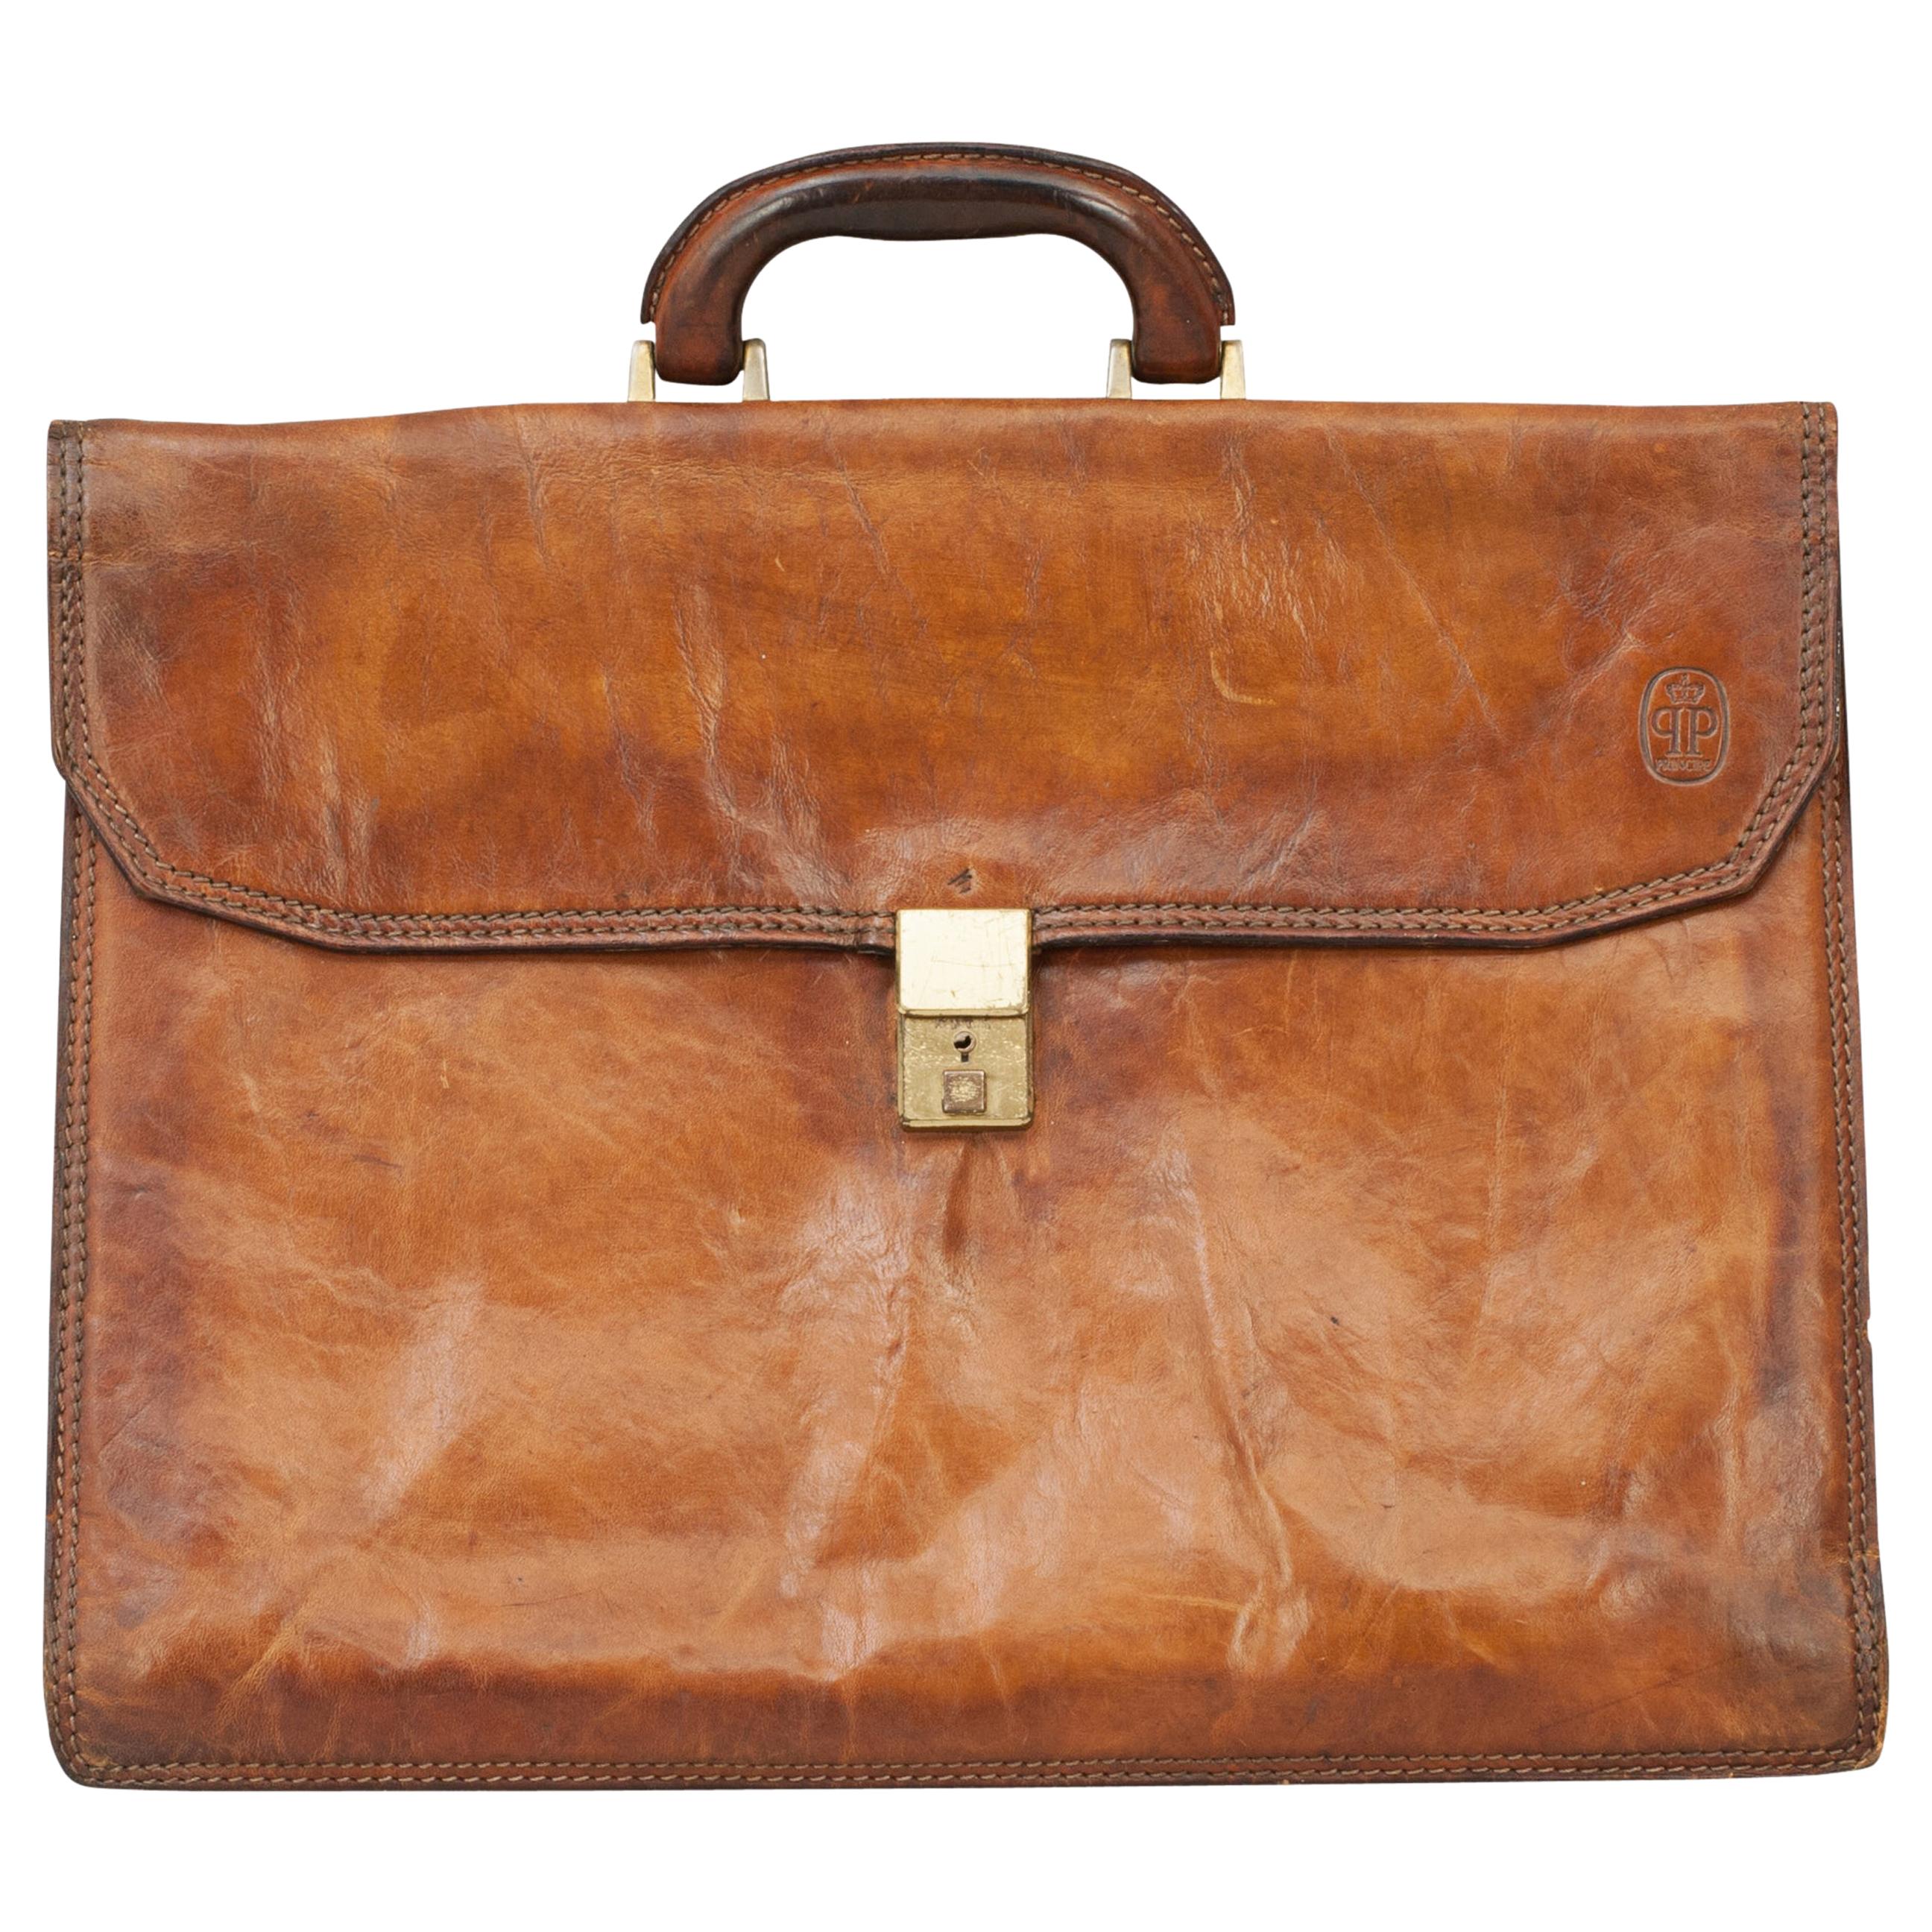 Vintage Leather Principe Expandable Attache Case Brief Case